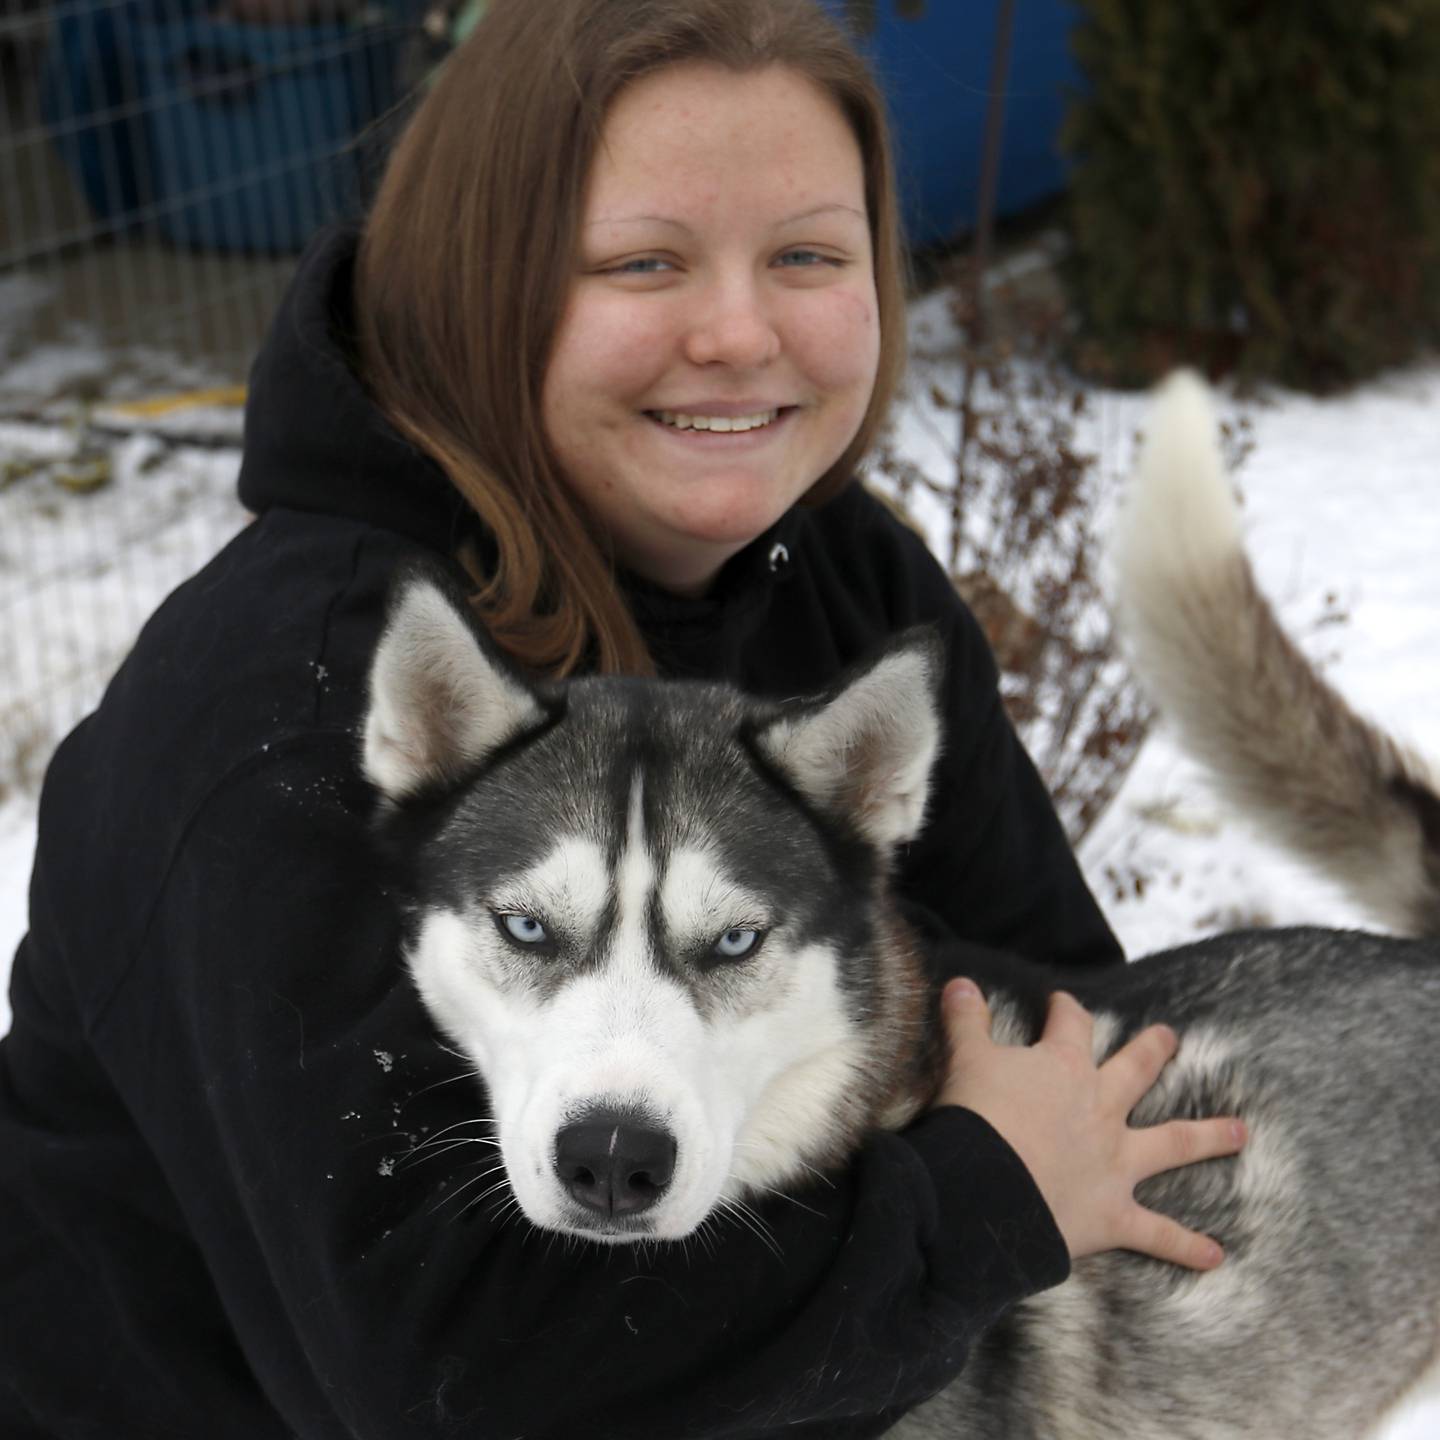 Hanna Kowal abraza a Arloc, uno de sus perros de trineo, el martes 20 de diciembre de 2022 en su casa cerca de Hebrón.  Koala entrena y compite con perros de trineo mientras trabaja y va a la universidad.